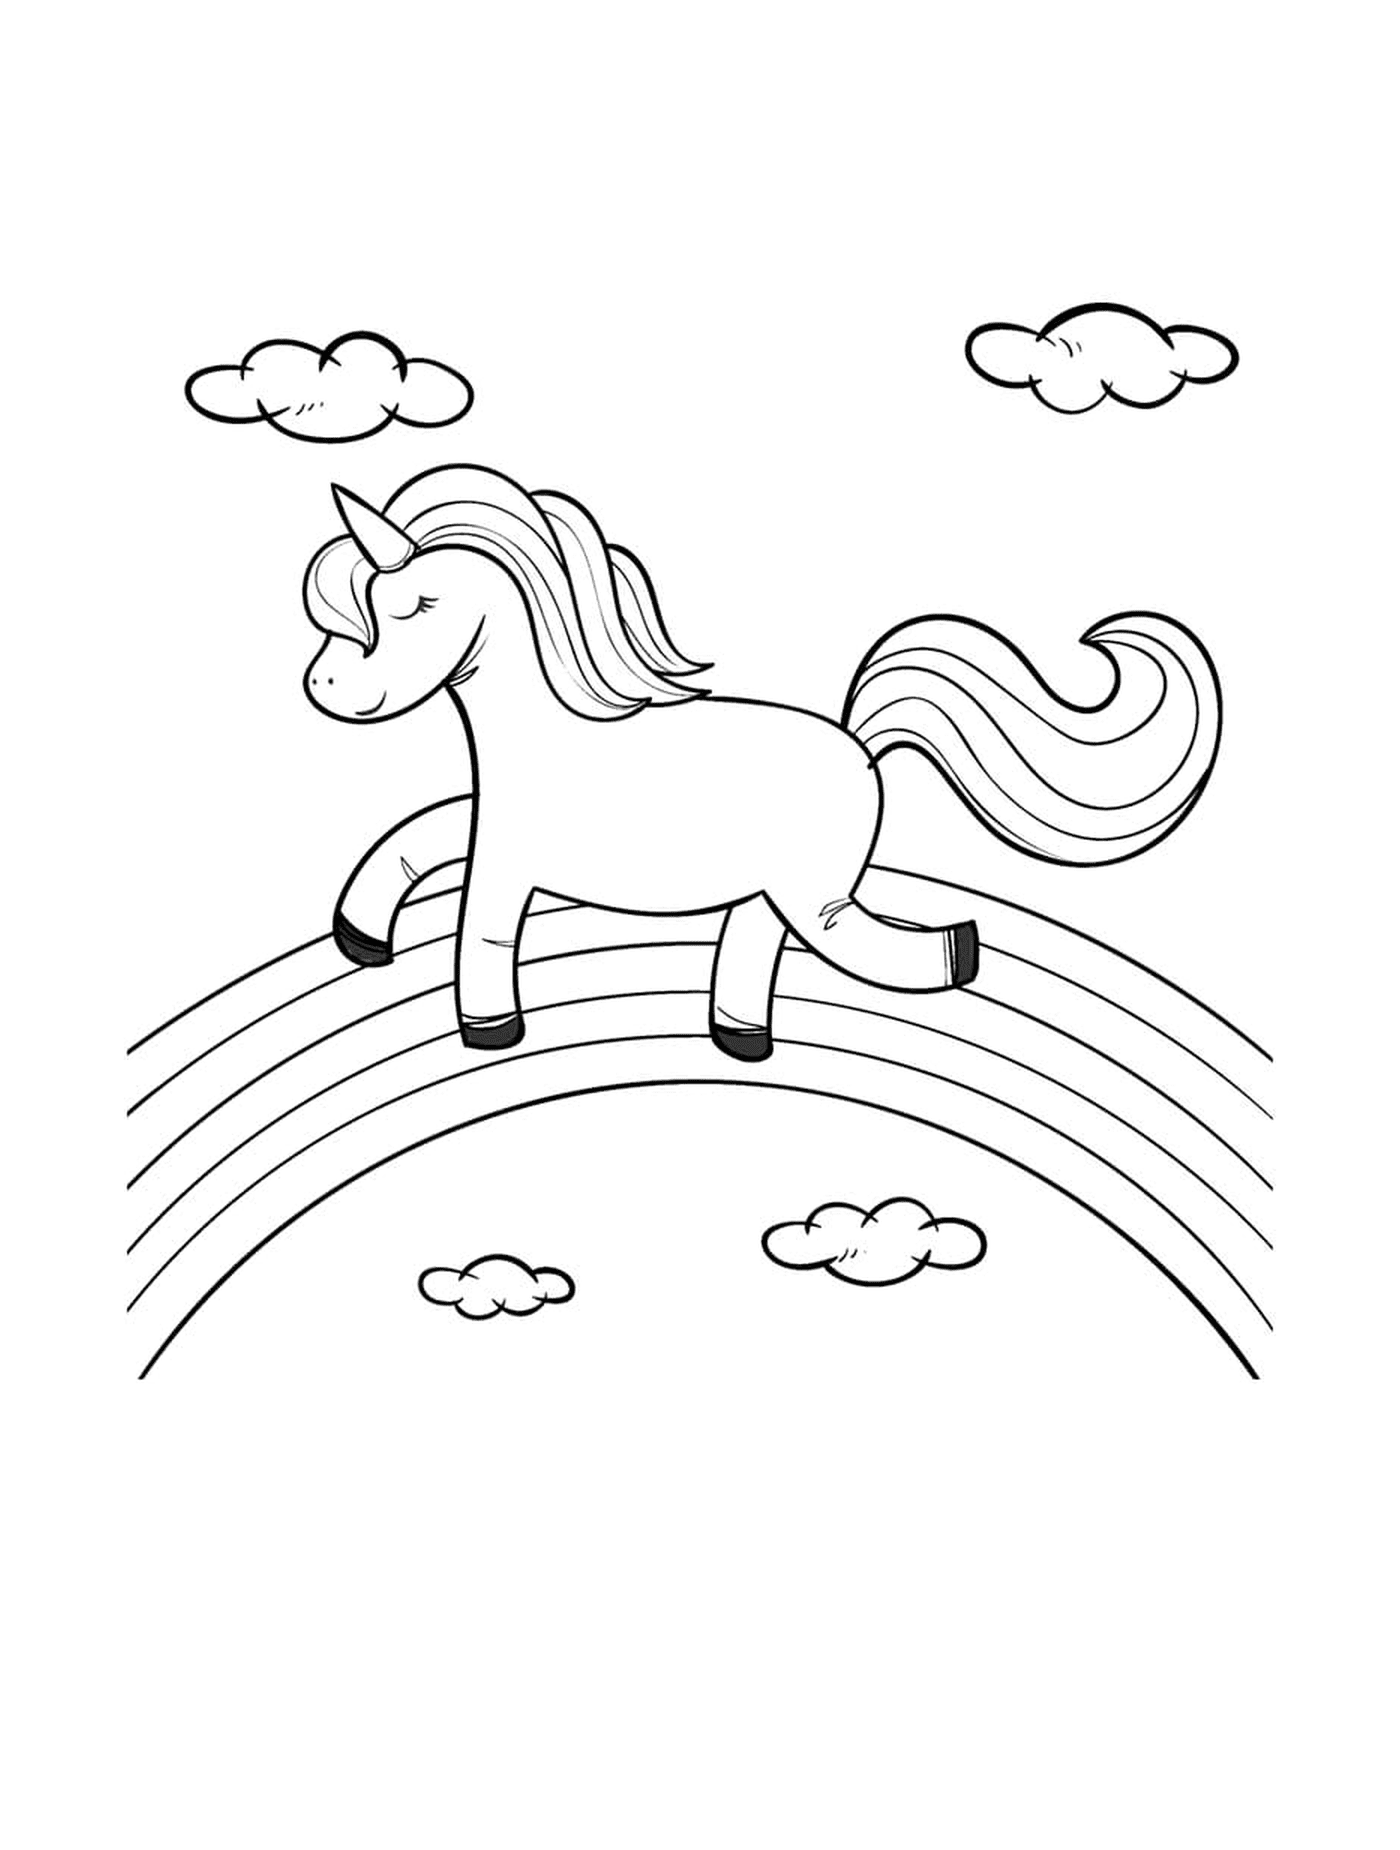   Une licorne marchant sur un arc-en-ciel avec sérénité 